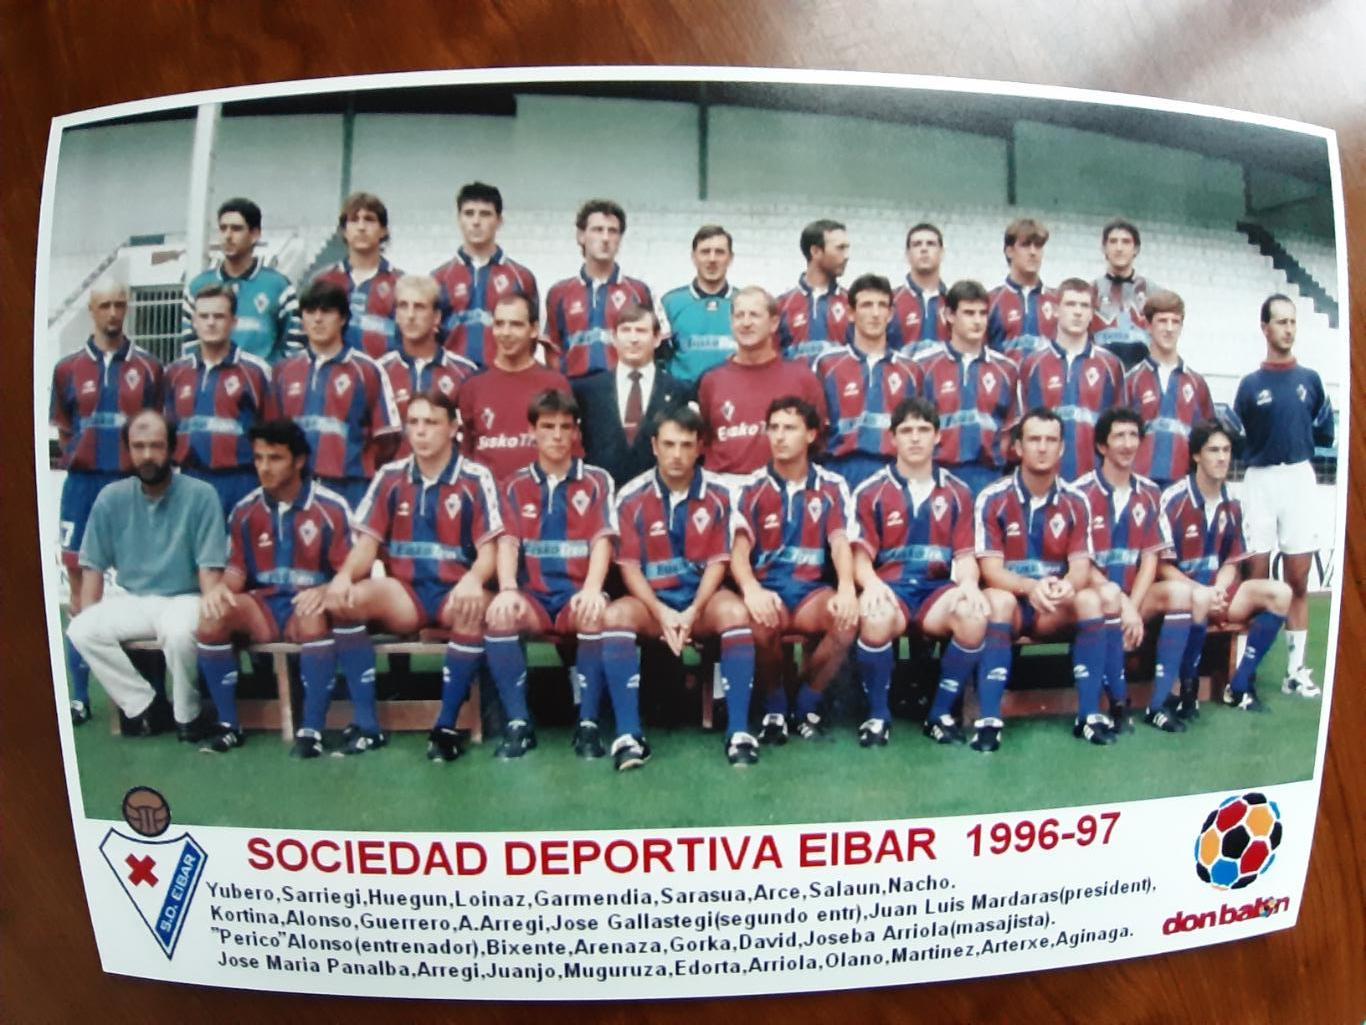 EIBAR 1996/97 (SPAIN)